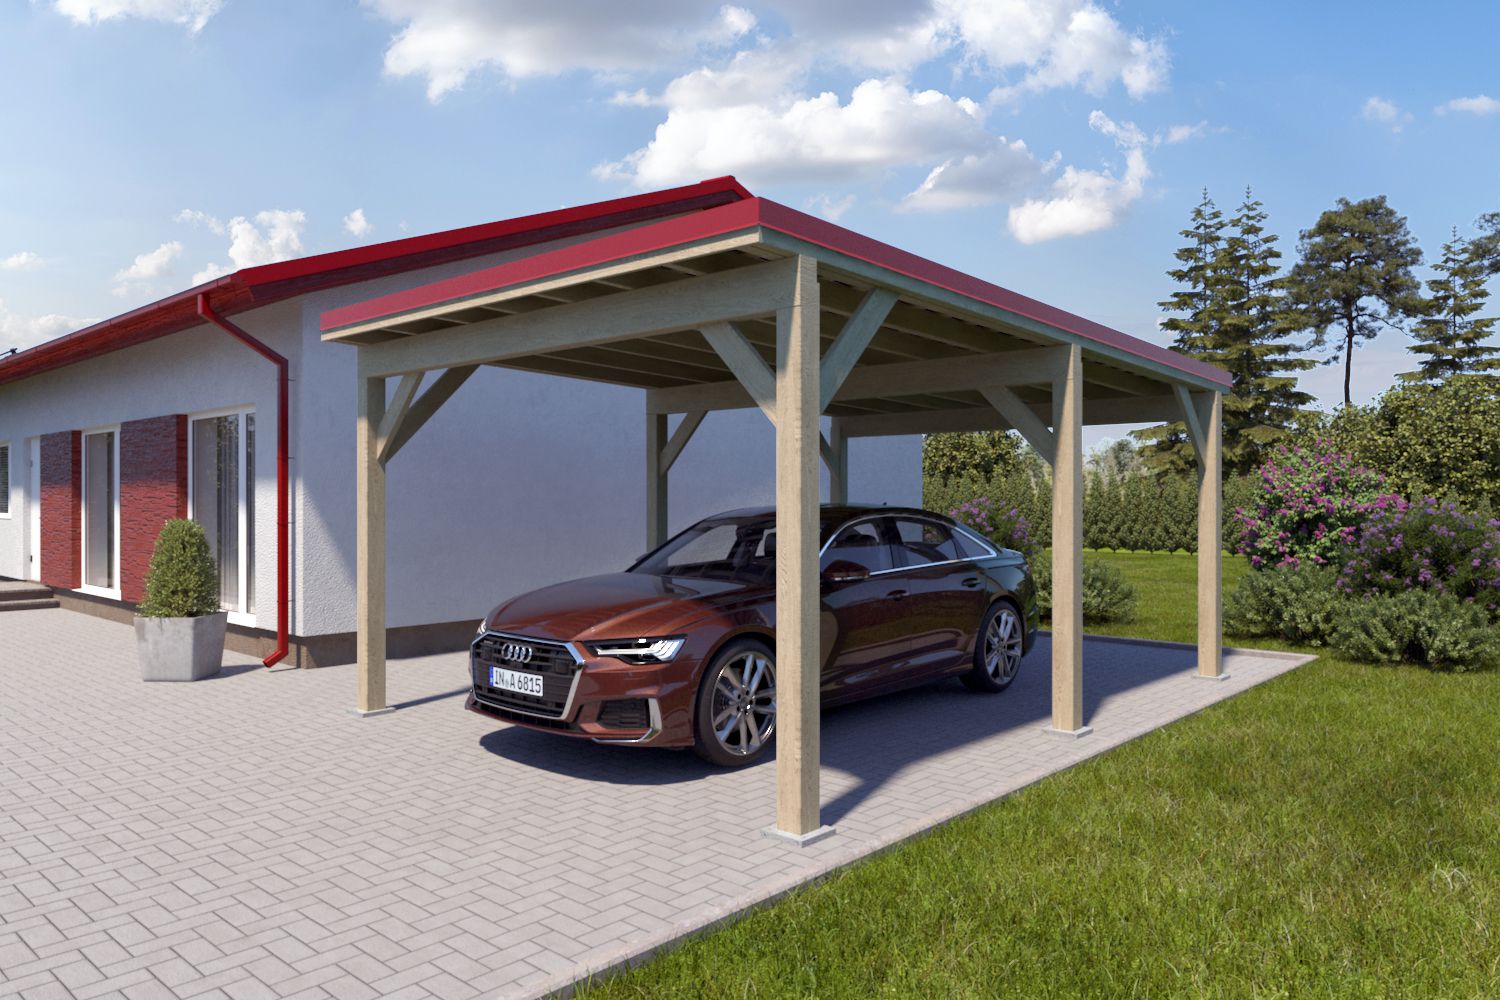 Enkele carport "Stable" 6 x 4 m (LxB) / 250 kg/m² dak belasting / 24 m² / onbehandeld met rood metaalprofielen metalen dak